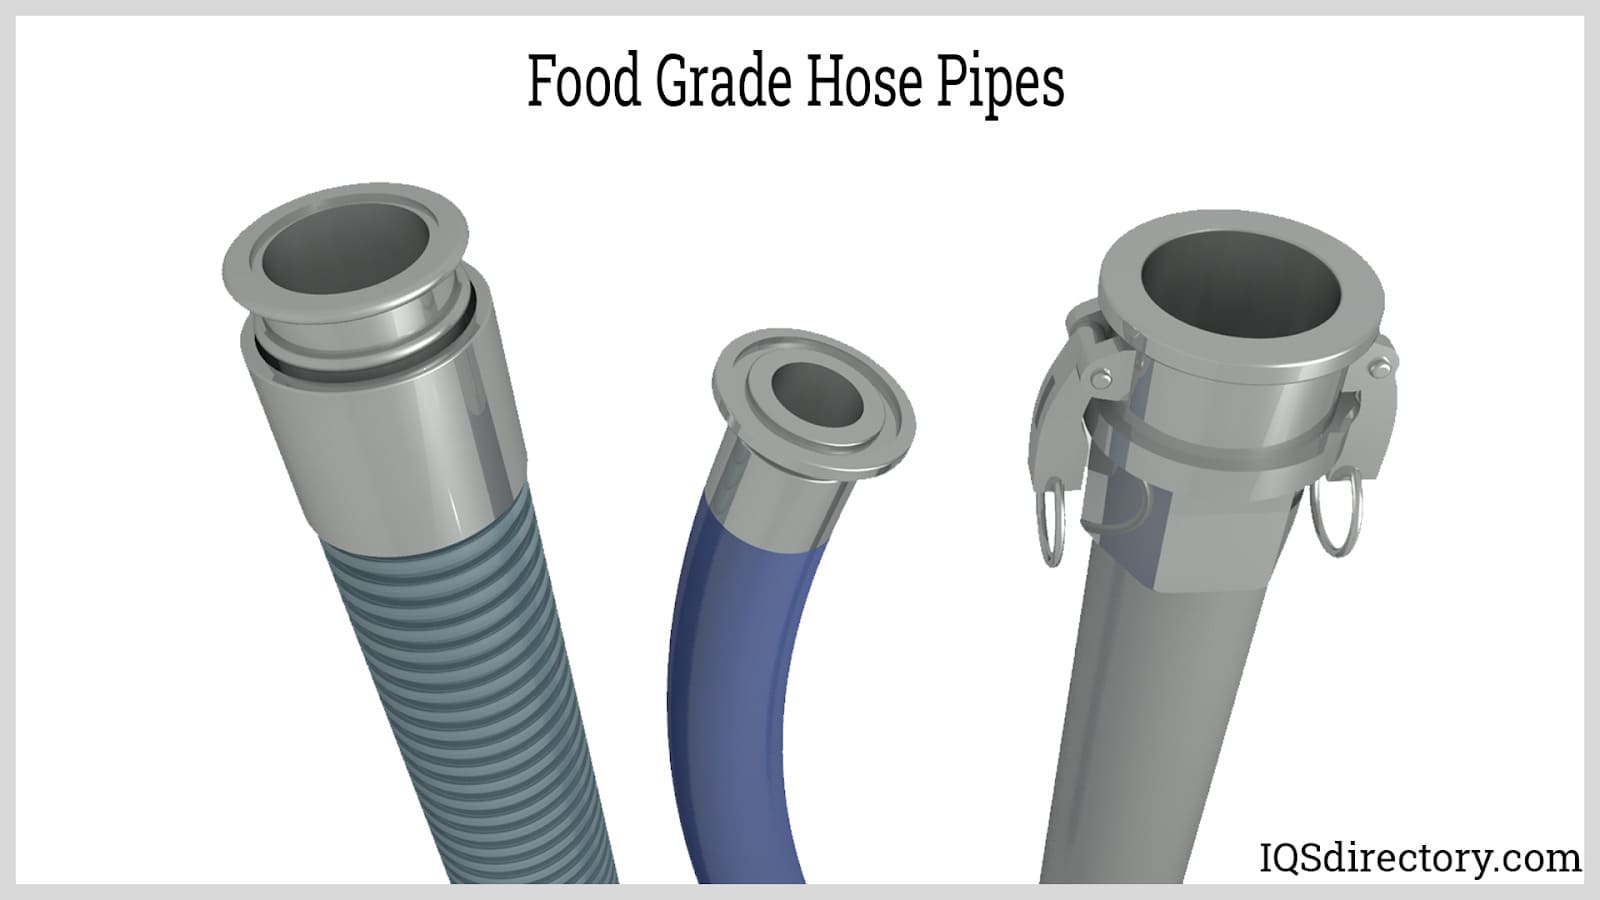 Food Grade Hose Pipes